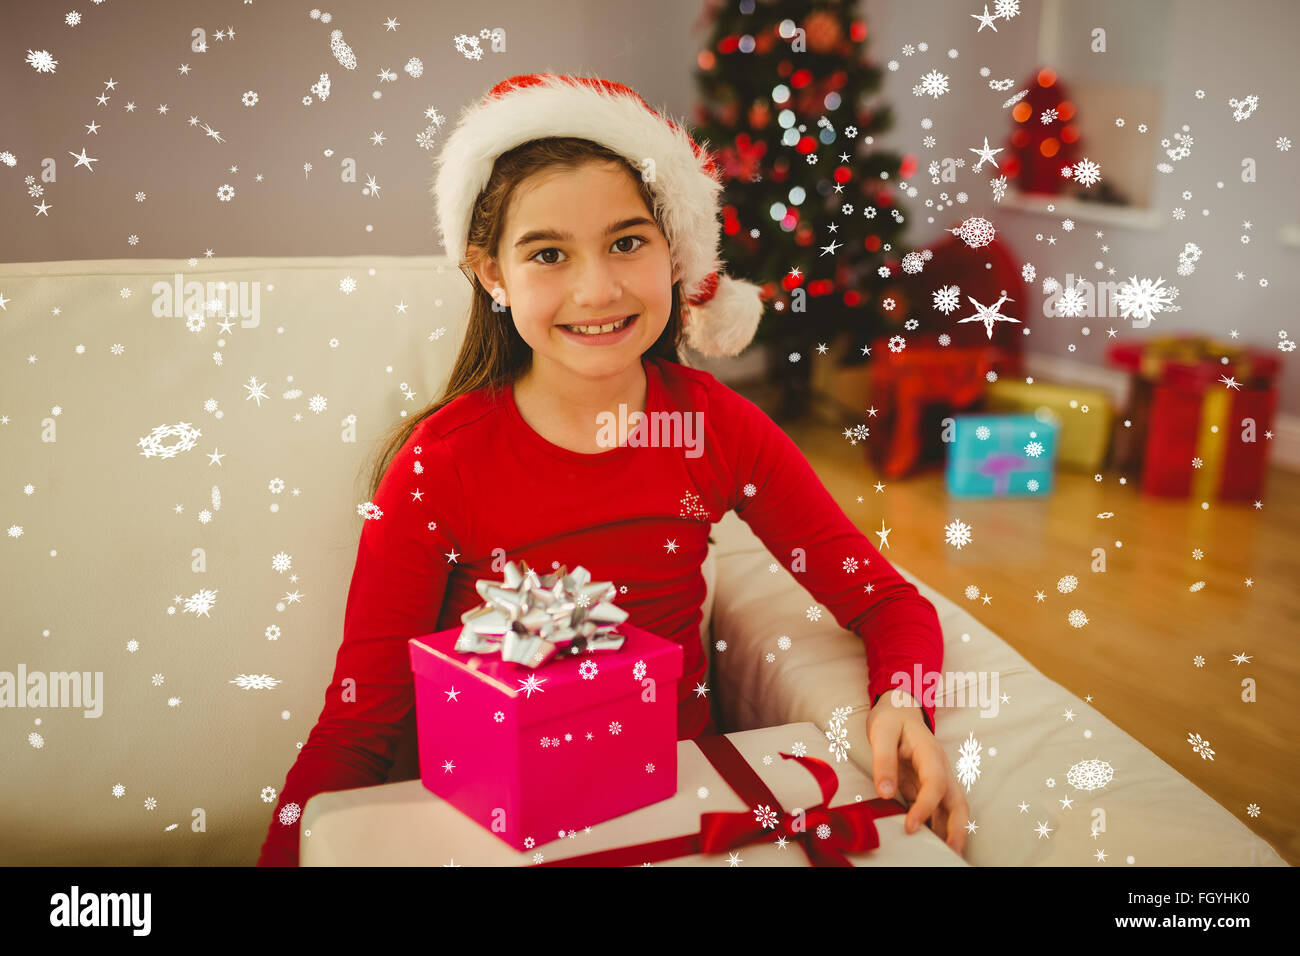 Imagen compuesta de alegre niña sonriente en cámara con regalos Foto de stock